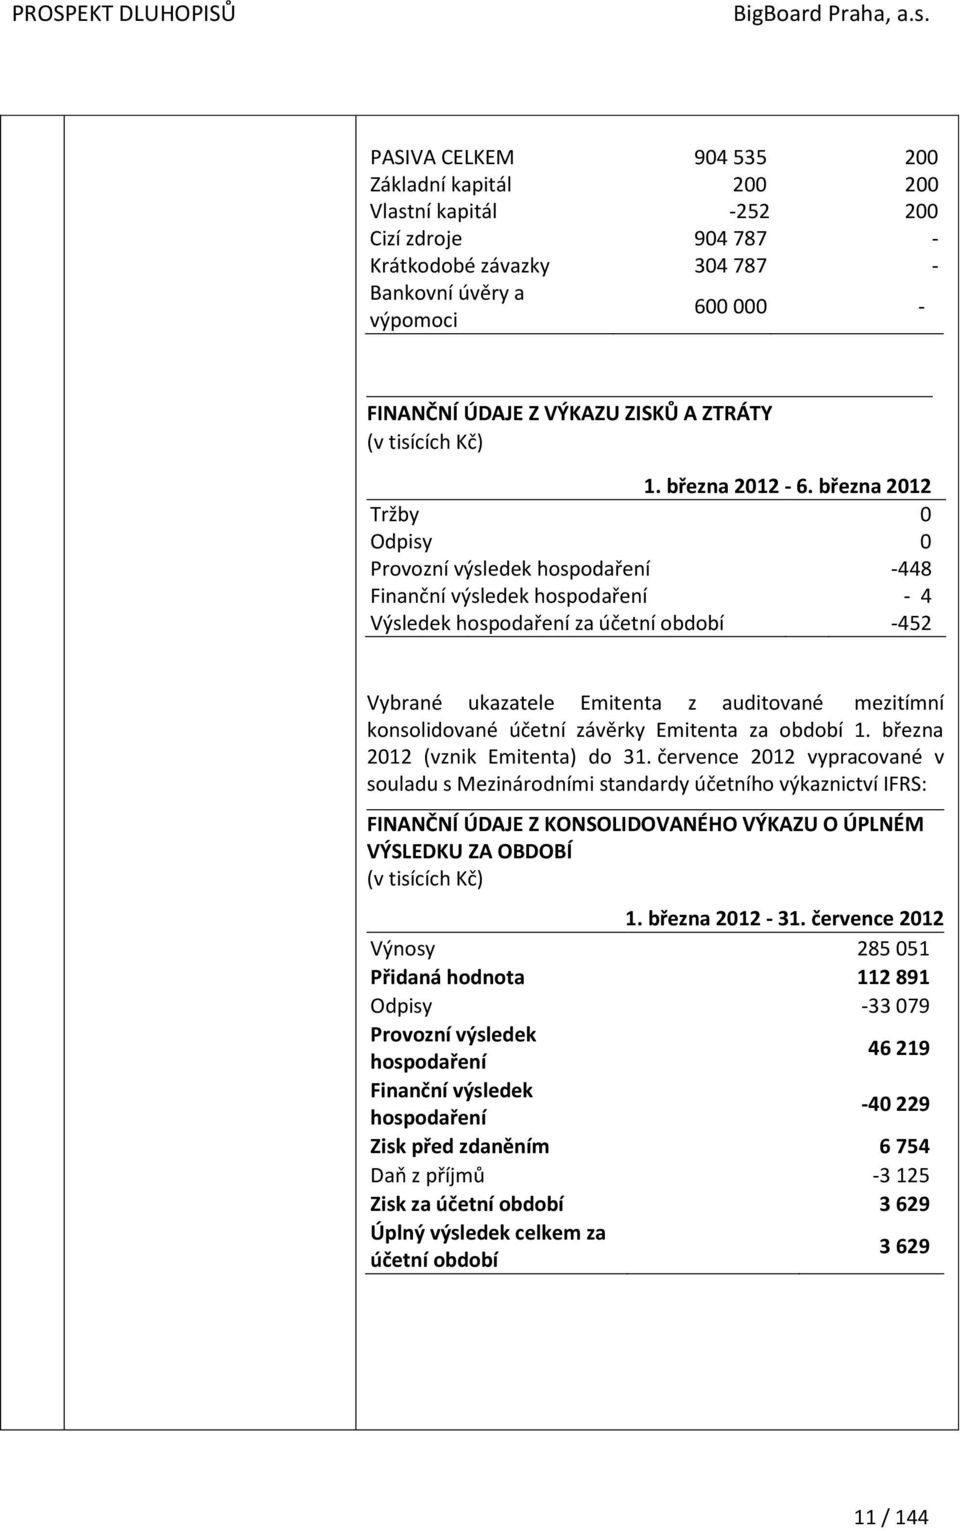 března 2012 Tržby 0 Odpisy 0 Provozní výsledek hospodaření -448 Finanční výsledek hospodaření - 4 Výsledek hospodaření za účetní období -452 Vybrané ukazatele Emitenta z auditované mezitímní